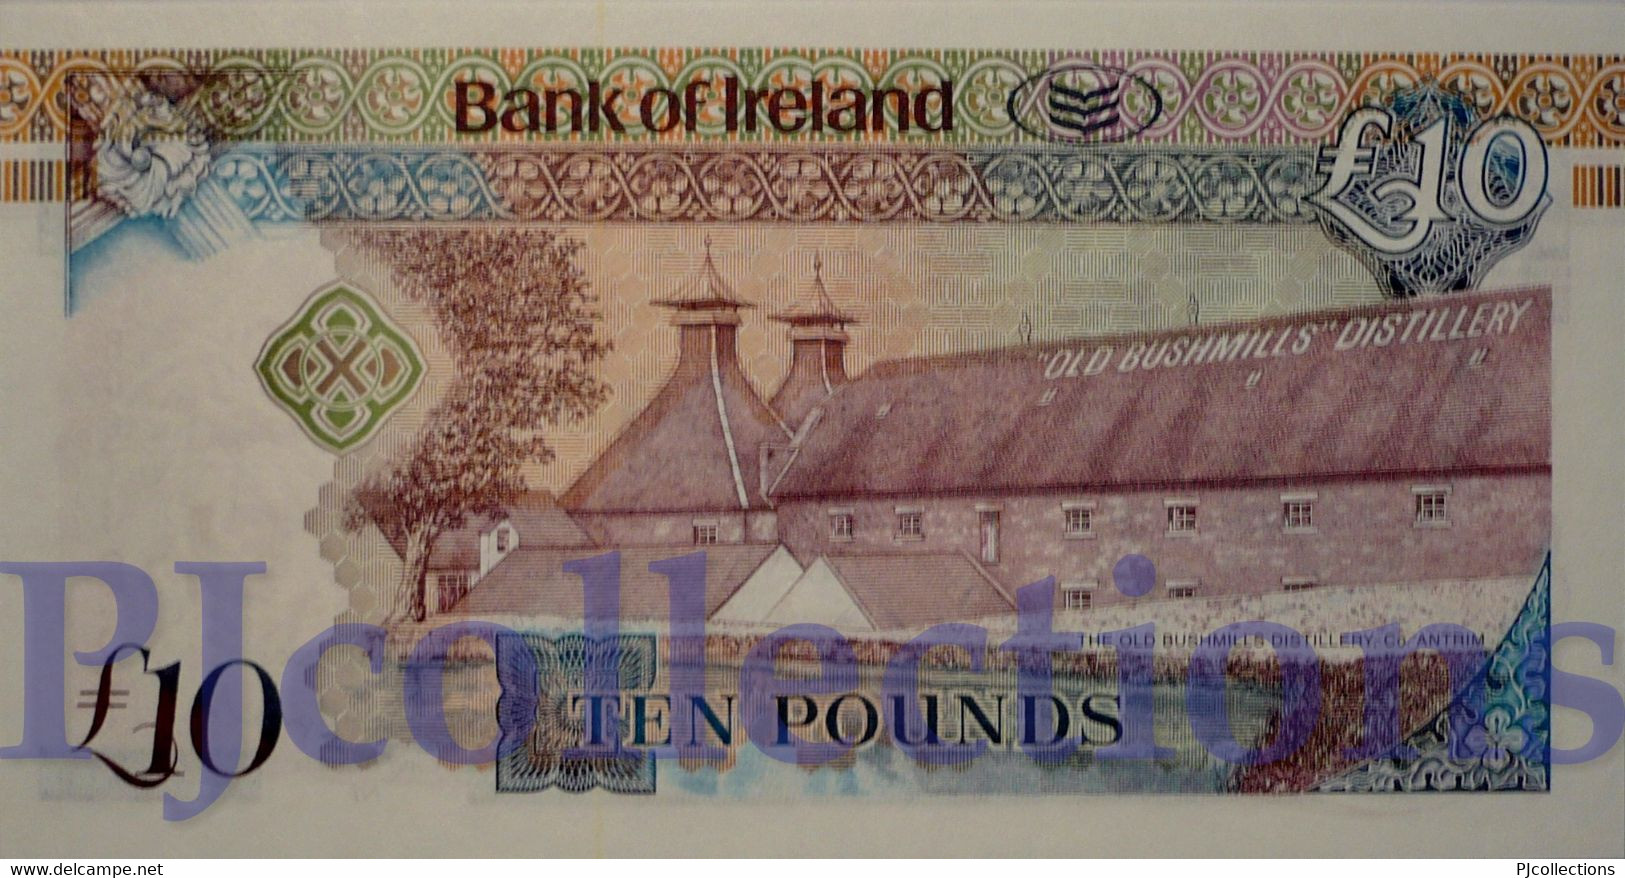 NORTHERN IRELAND 10 POUNDS 2008 PICK 84 UNC - Irland